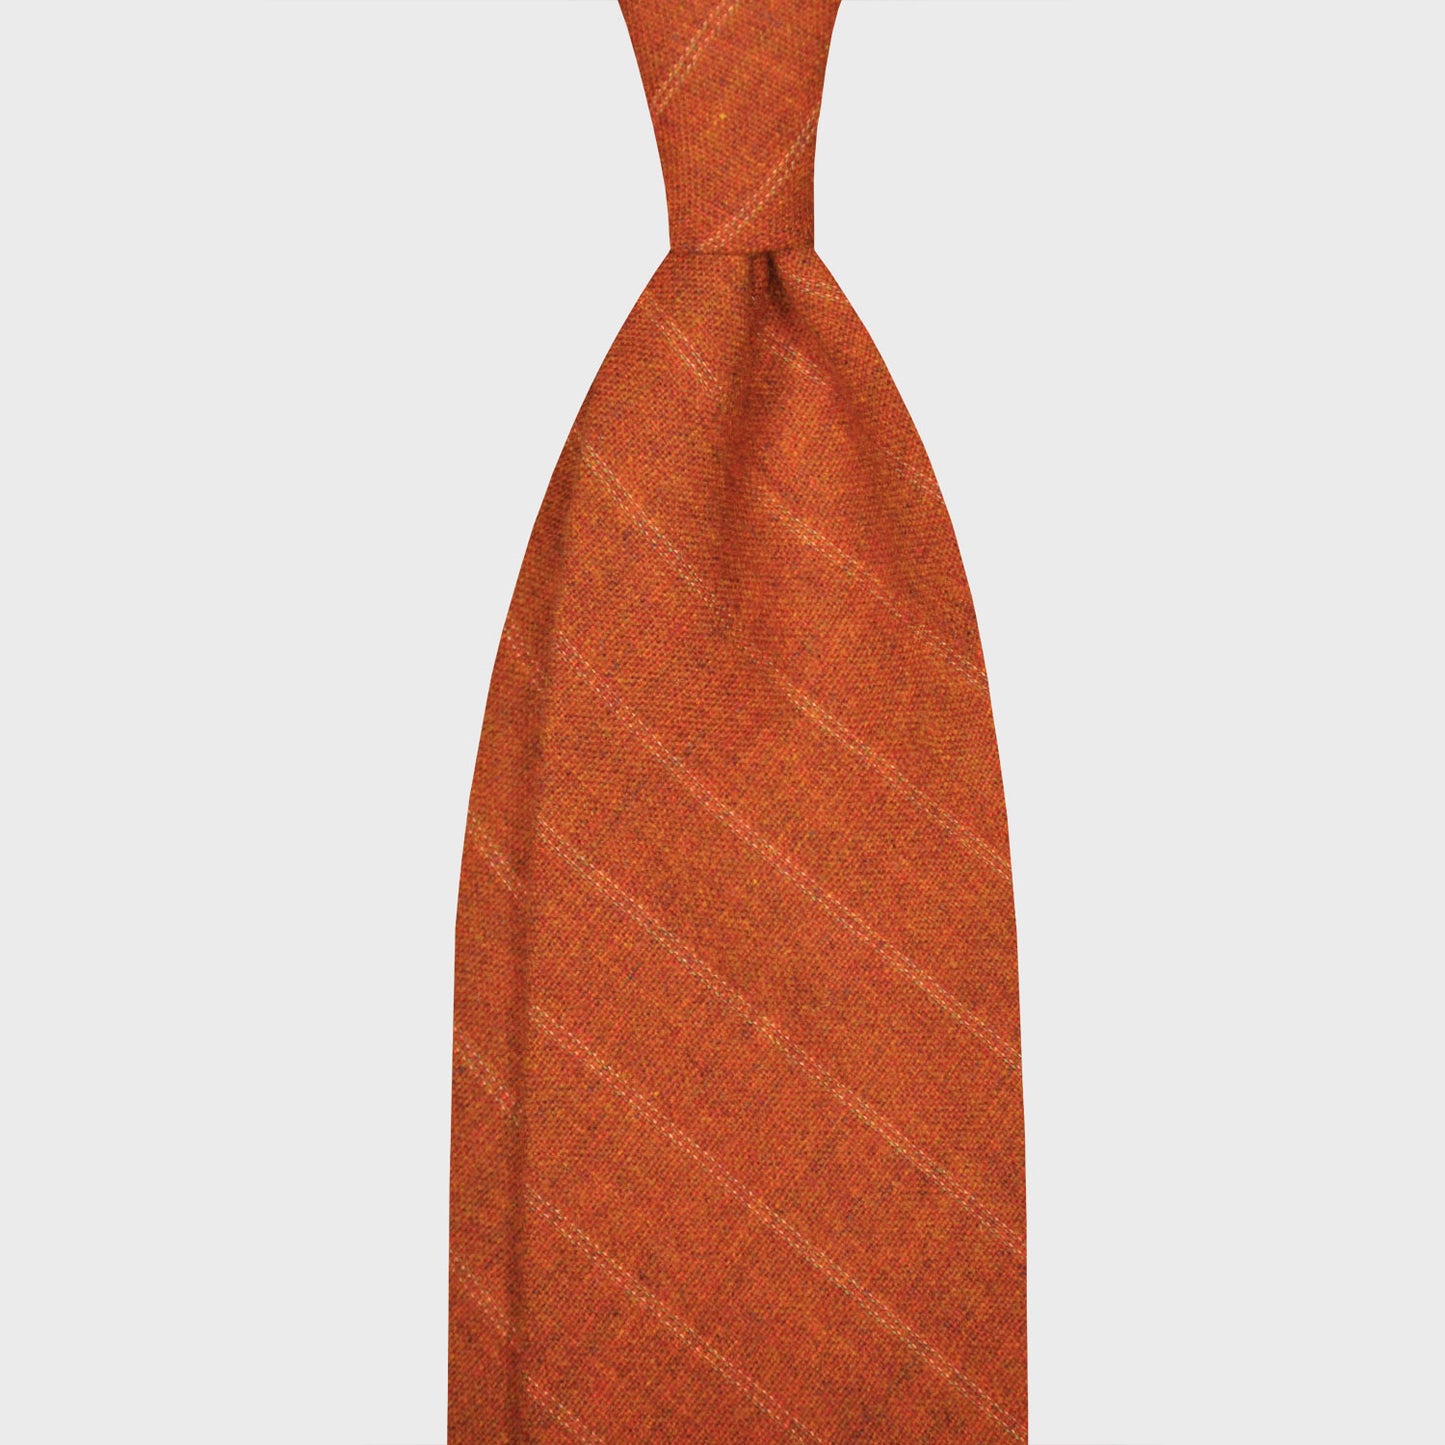 Load image into Gallery viewer, F.Marino Regimental Wool Tie 3 Folds Dark Orange-Wools Boutique Uomo
